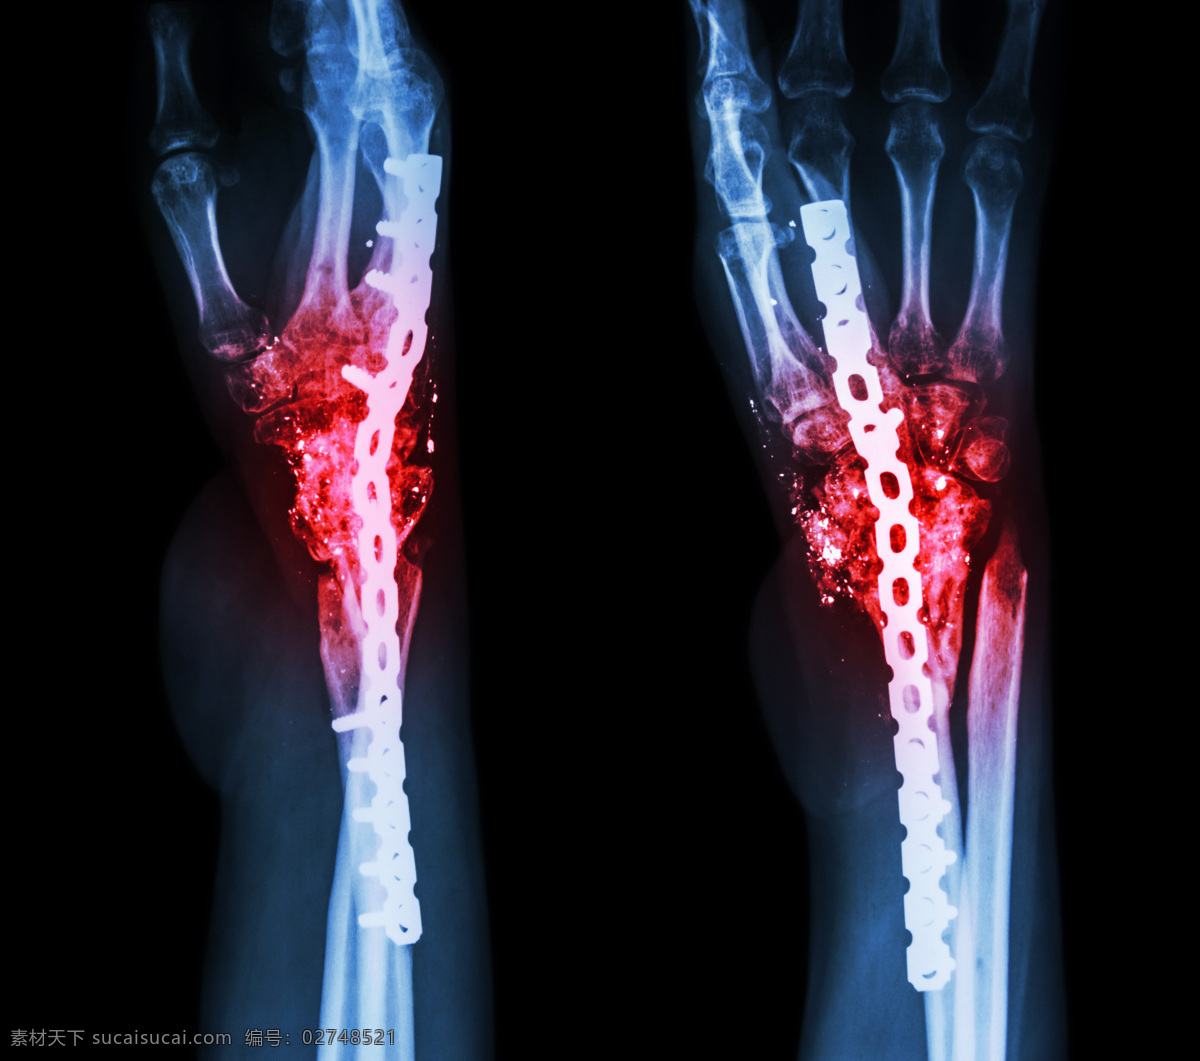 x光底片 x射线 骨骼 关节扫描 底片 x射线扫描 医院 医疗 医学 病人 医疗护理 现代科技